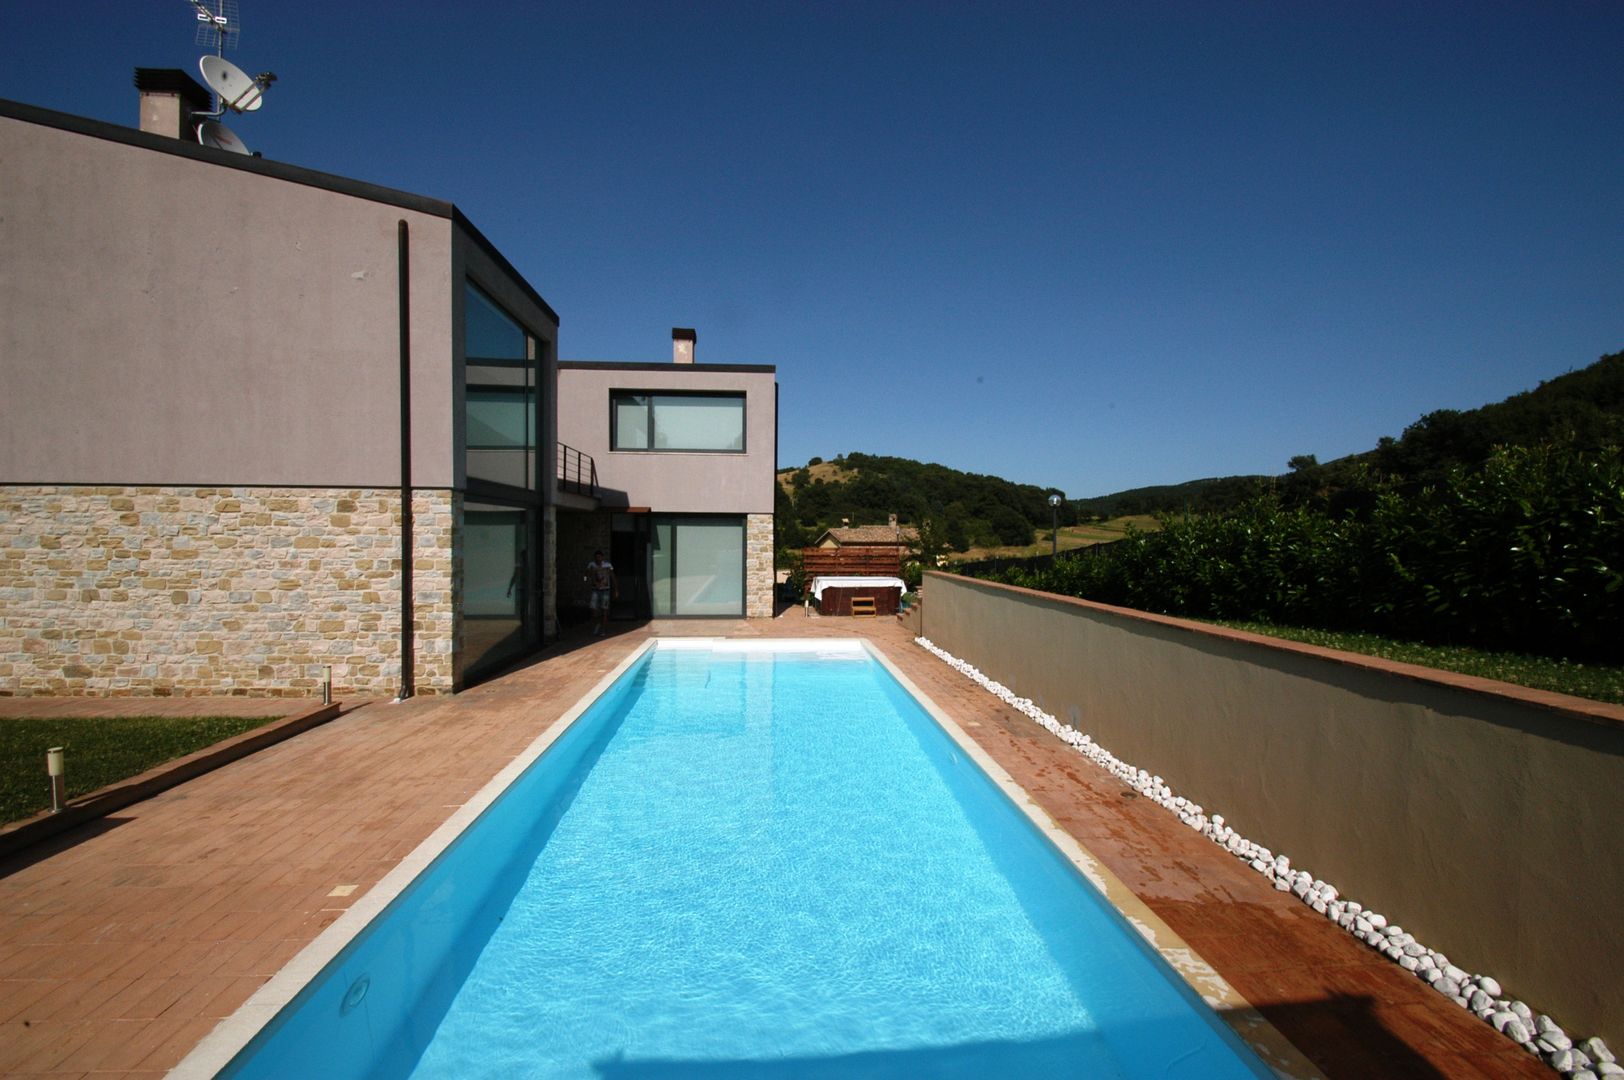 Villa unifamiliare con piscina a Foligno (PG), Fabricamus - Architettura e Ingegneria Fabricamus - Architettura e Ingegneria Modern houses